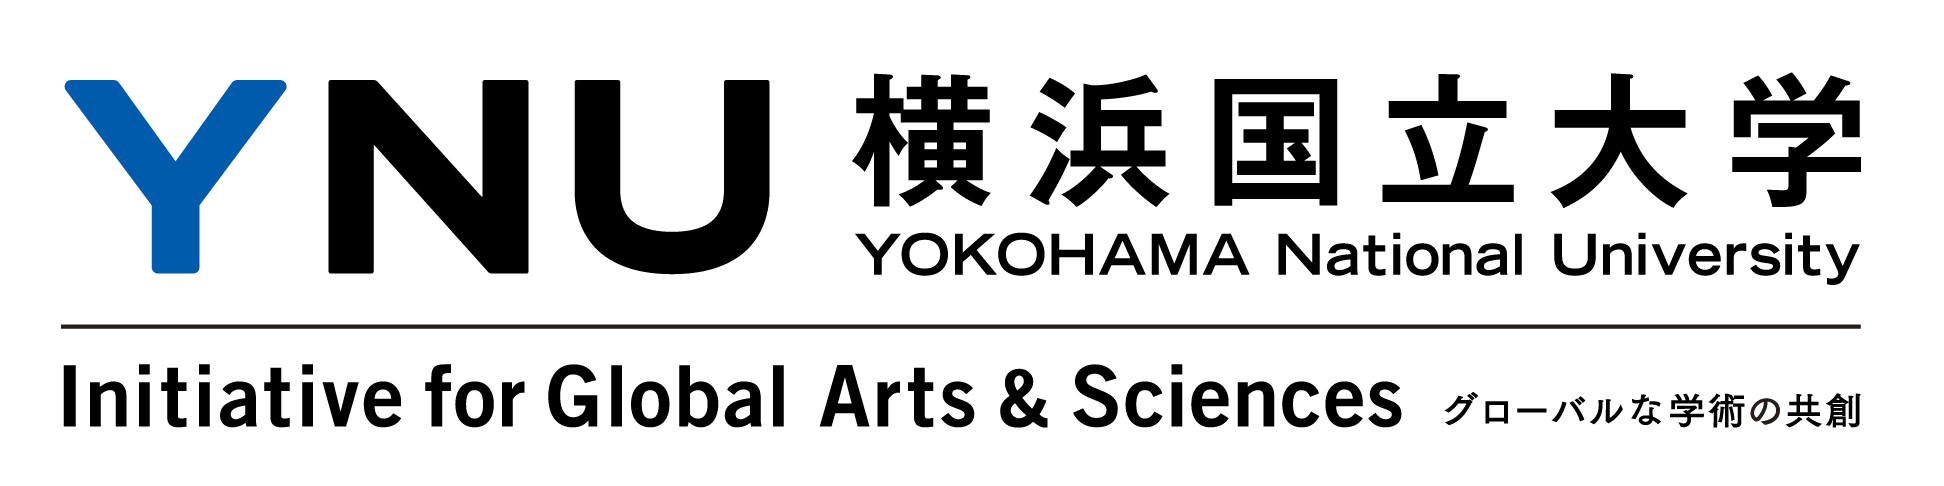 横滨国立大学logo